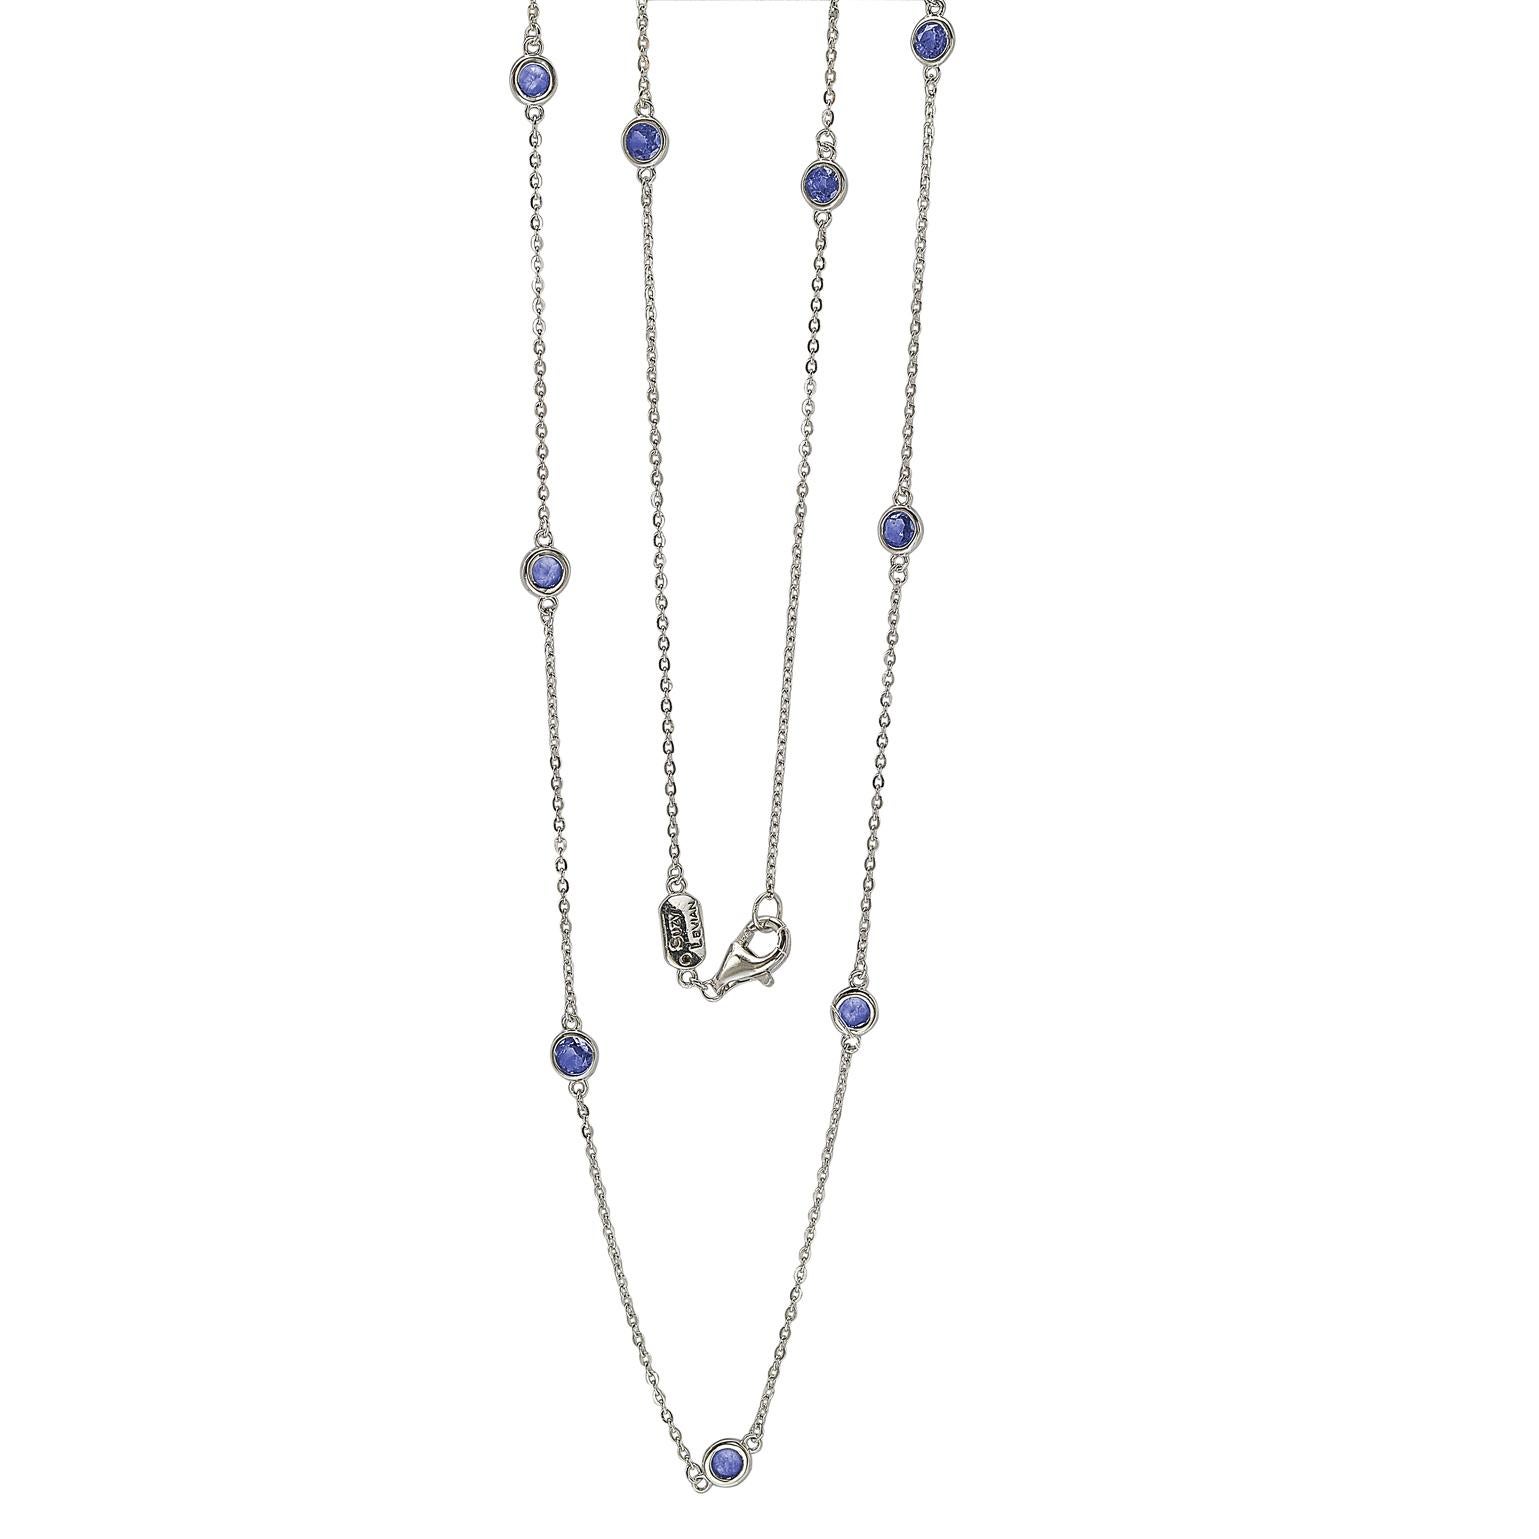 Umschmeicheln Sie Ihren Hals mit funkelnden Schimmern mit dieser schönen Saphir-Station-Halskette. Diese Halskette kann mit anderen langen Halsketten gestapelt oder als Einzelkette getragen werden, was sie zur perfekten Halskette für jeden Anlass